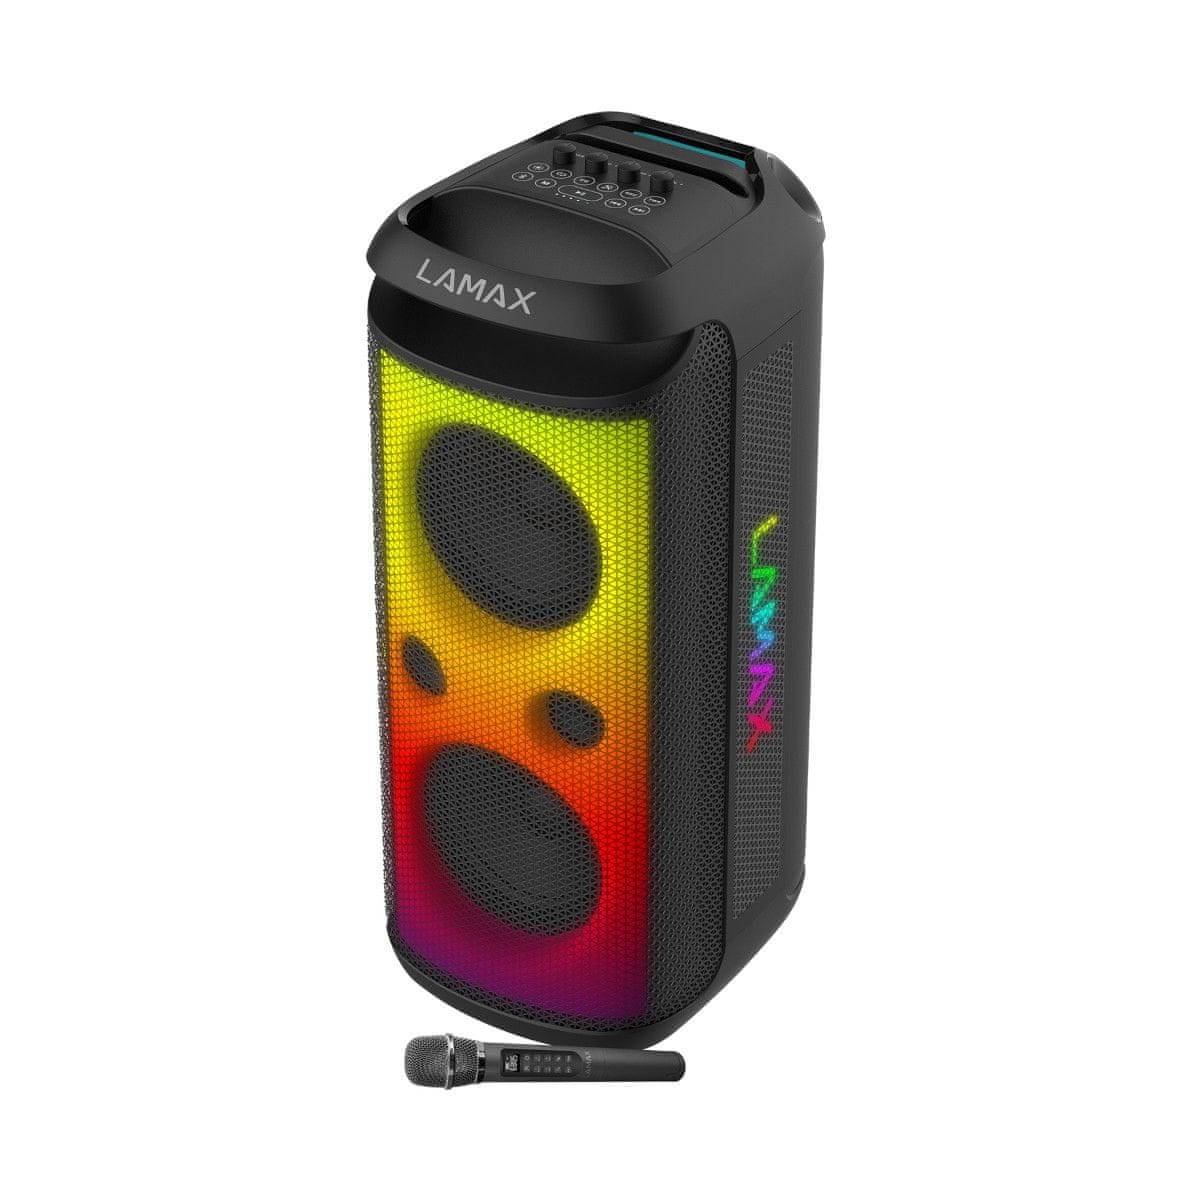  přenosný party reproduktor bluetooth lamax max partyking1 super zvuk nabíjecí baterie bezdrátové párování karaoke 